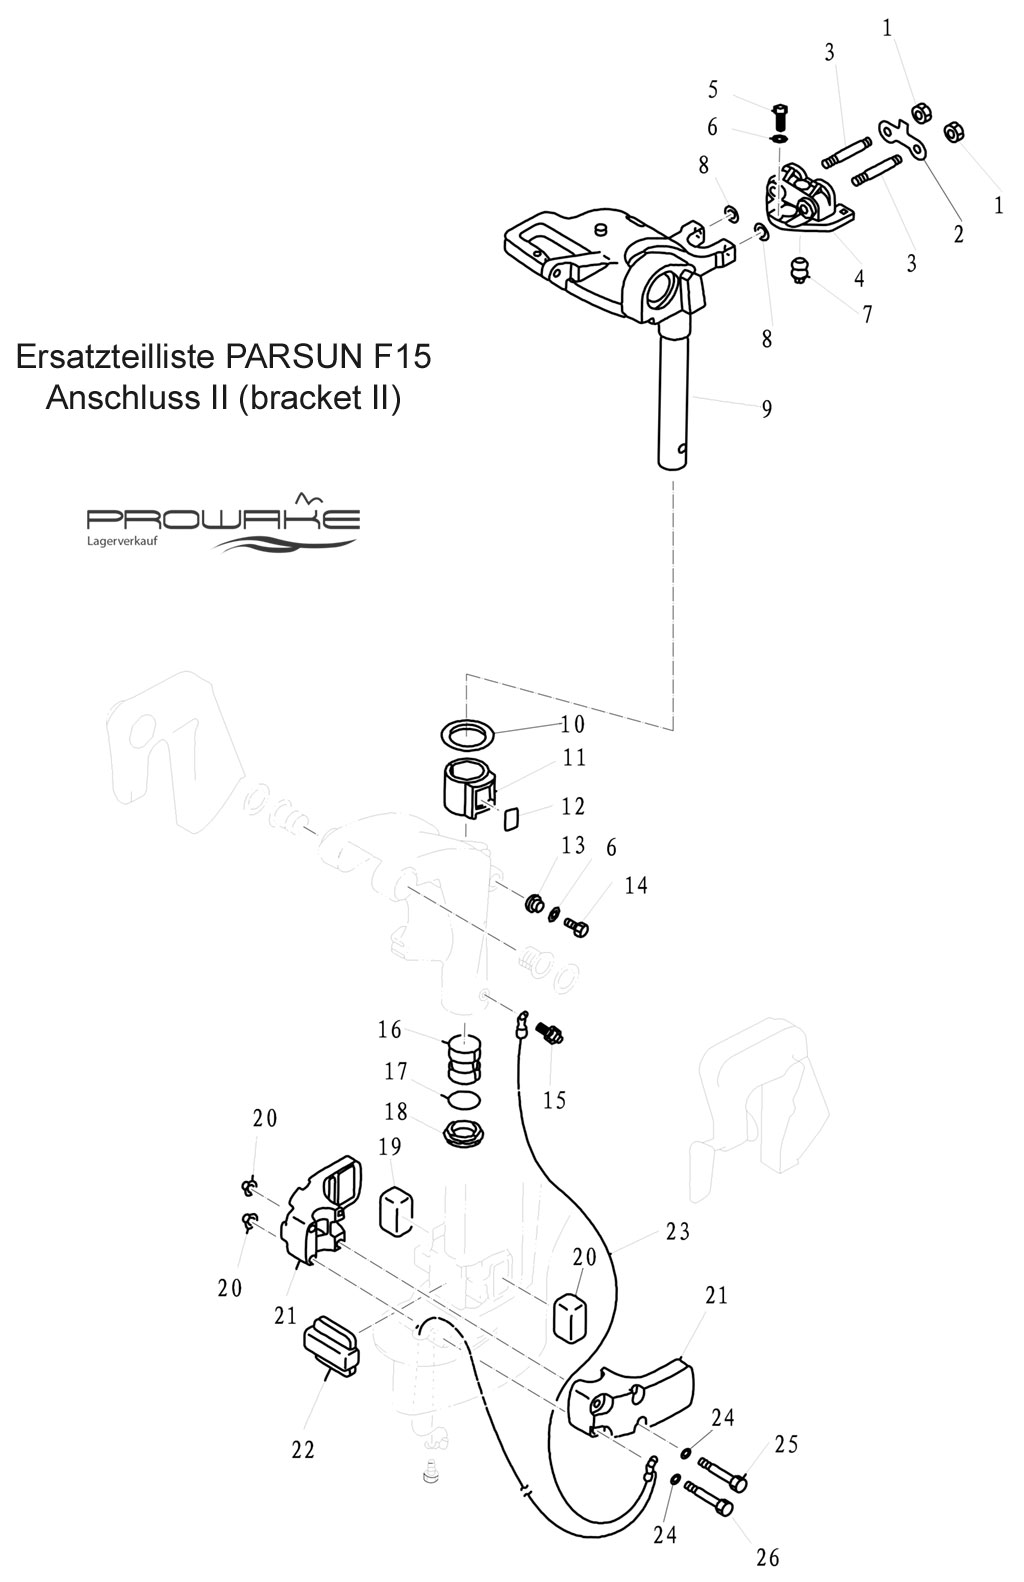 Parsun F15 (B)  Ersatzteile / Spare Parts: Halterung I